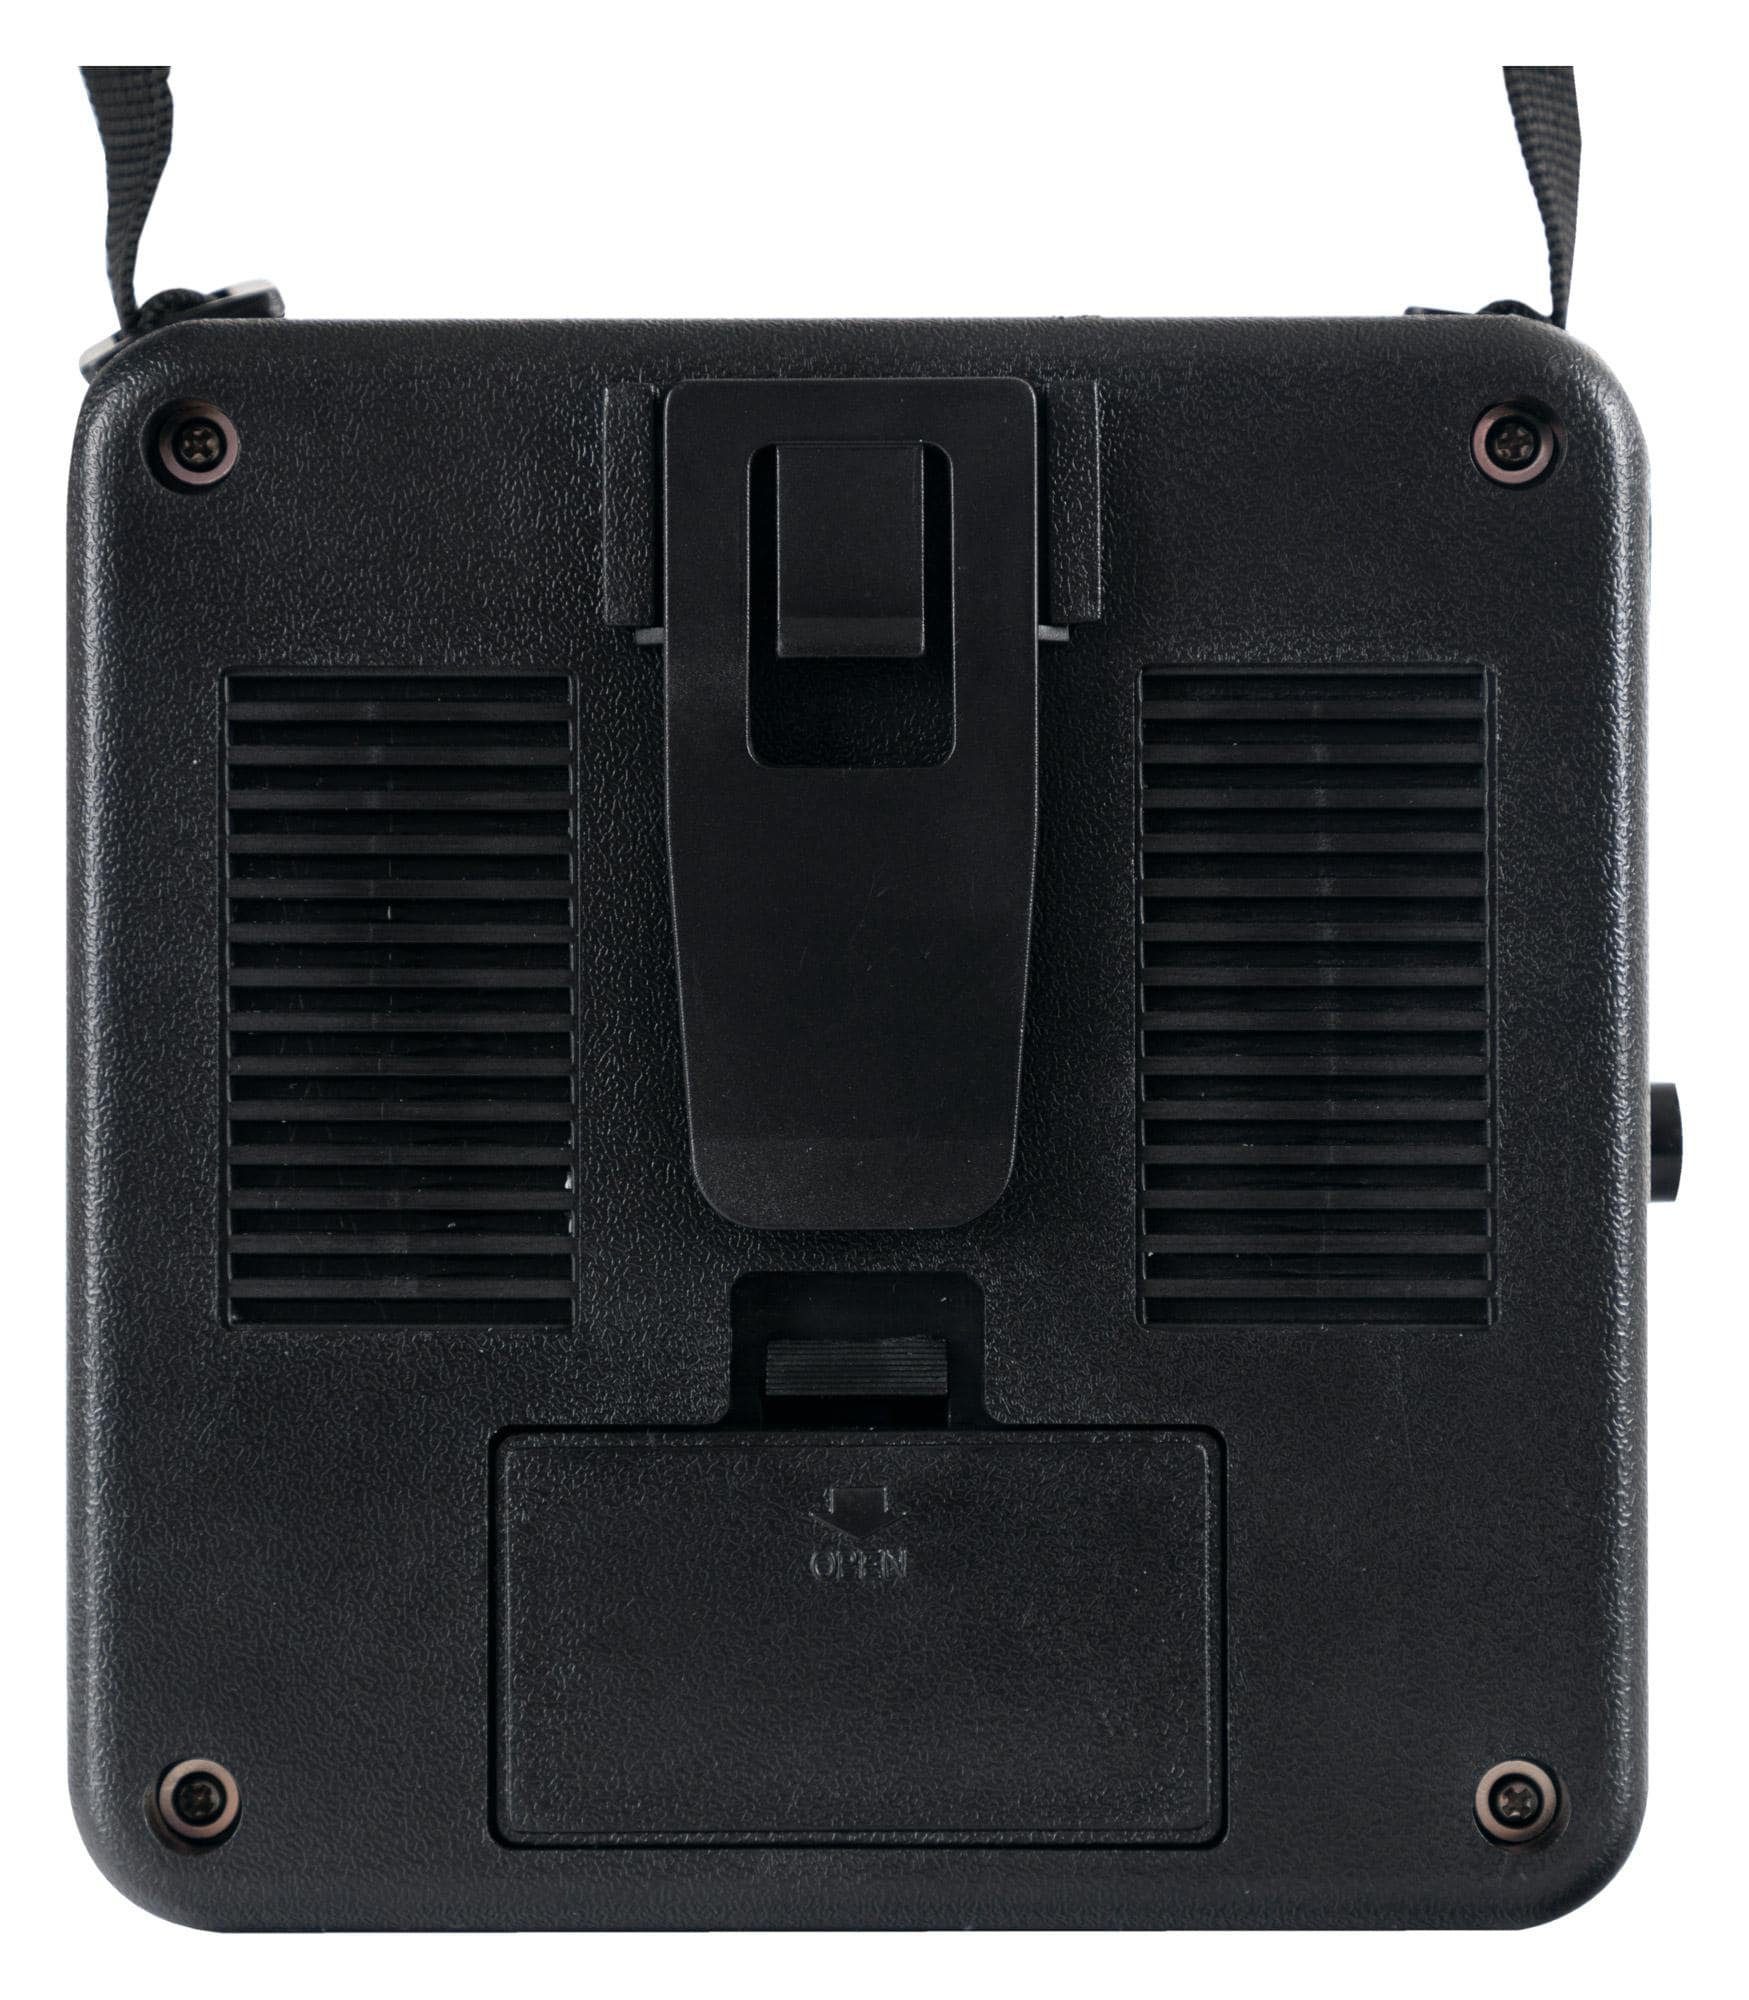 Jimi 5 GA-5 Batterie Mini-Gitarrenverstärker (Anzahl Betrieb oder Kanäle: Rocktile W, möglich) mit Netzteil 1, Verstärker